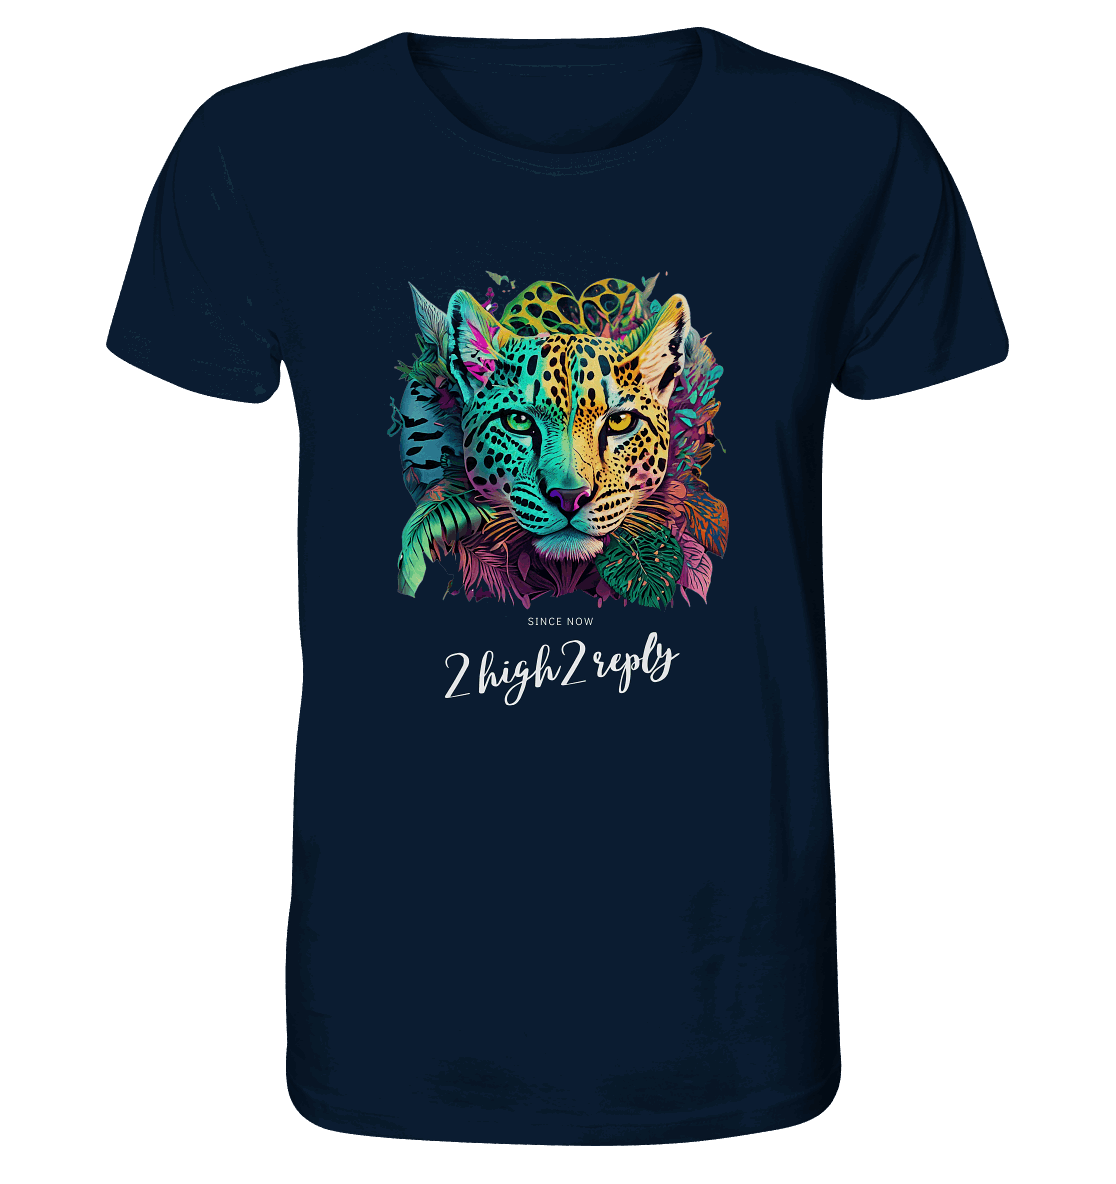 2high2reply / leppard - Organic Shirt